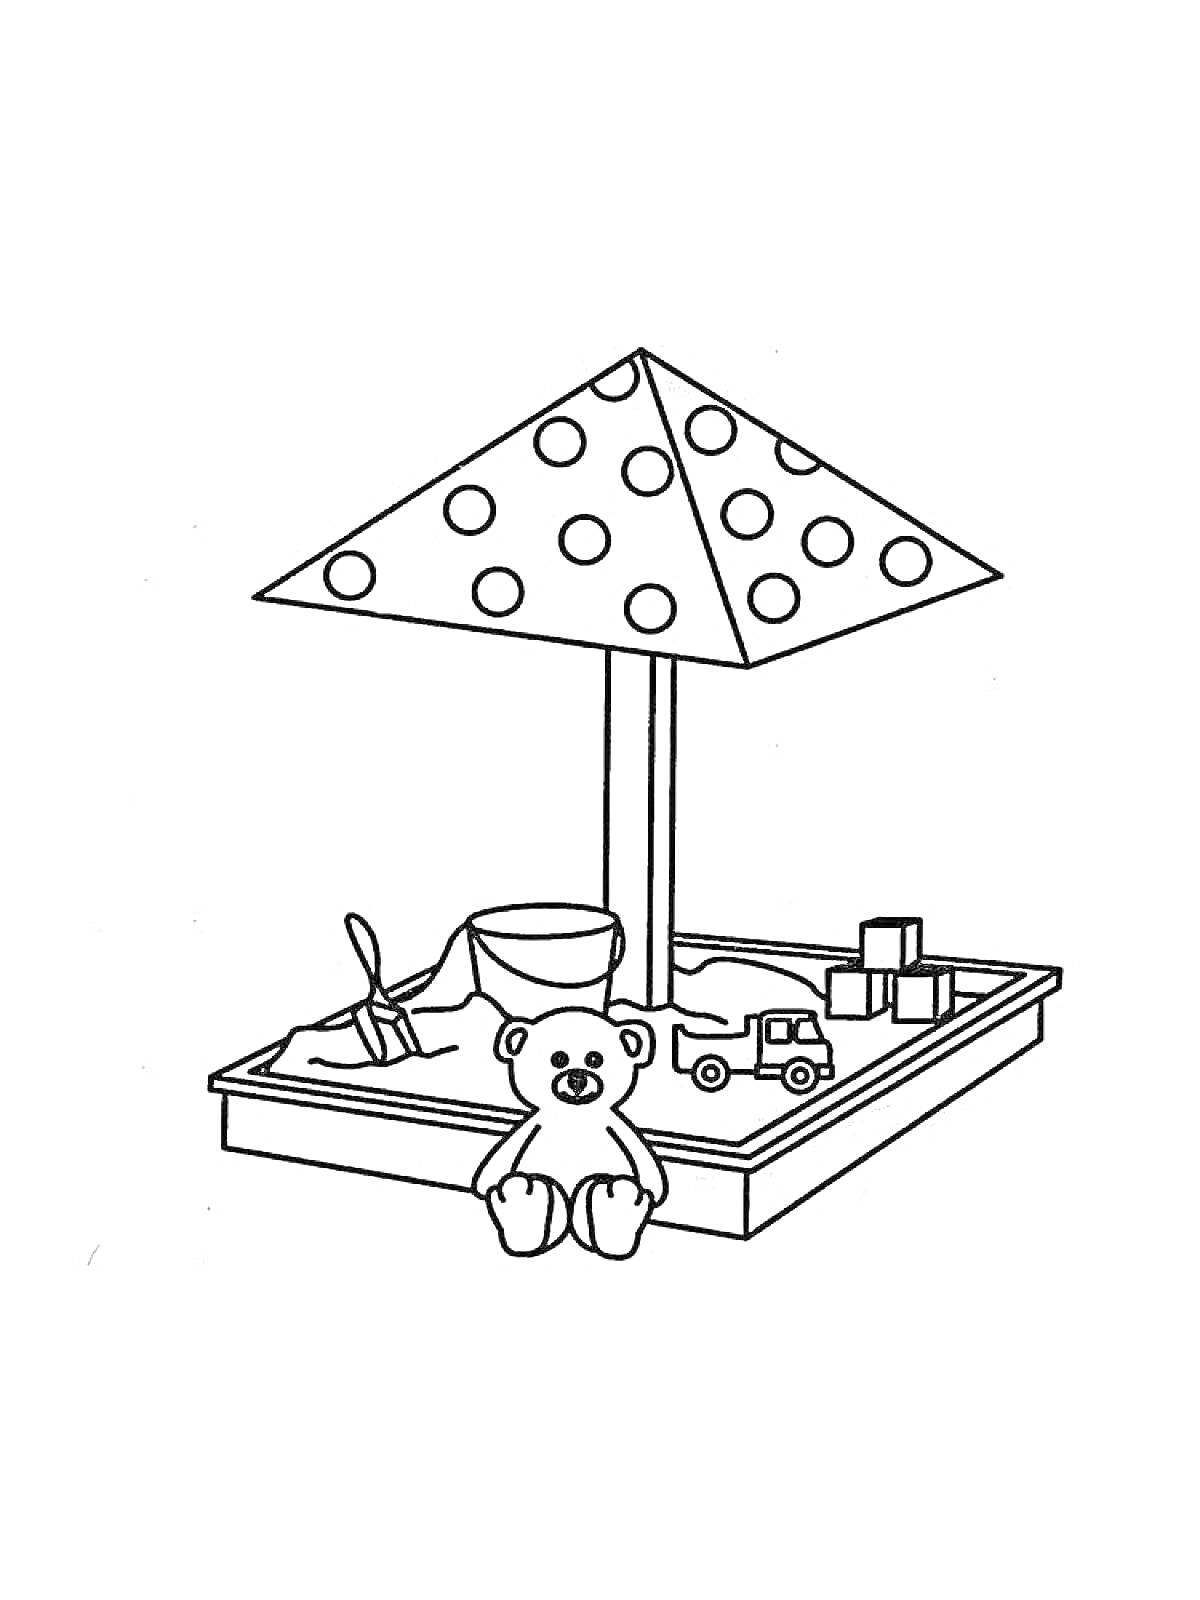 Песочница с игрушками - ведро, лопата, кубики, игрушечный грузовик и плюшевый медведь под зонтом в горошек